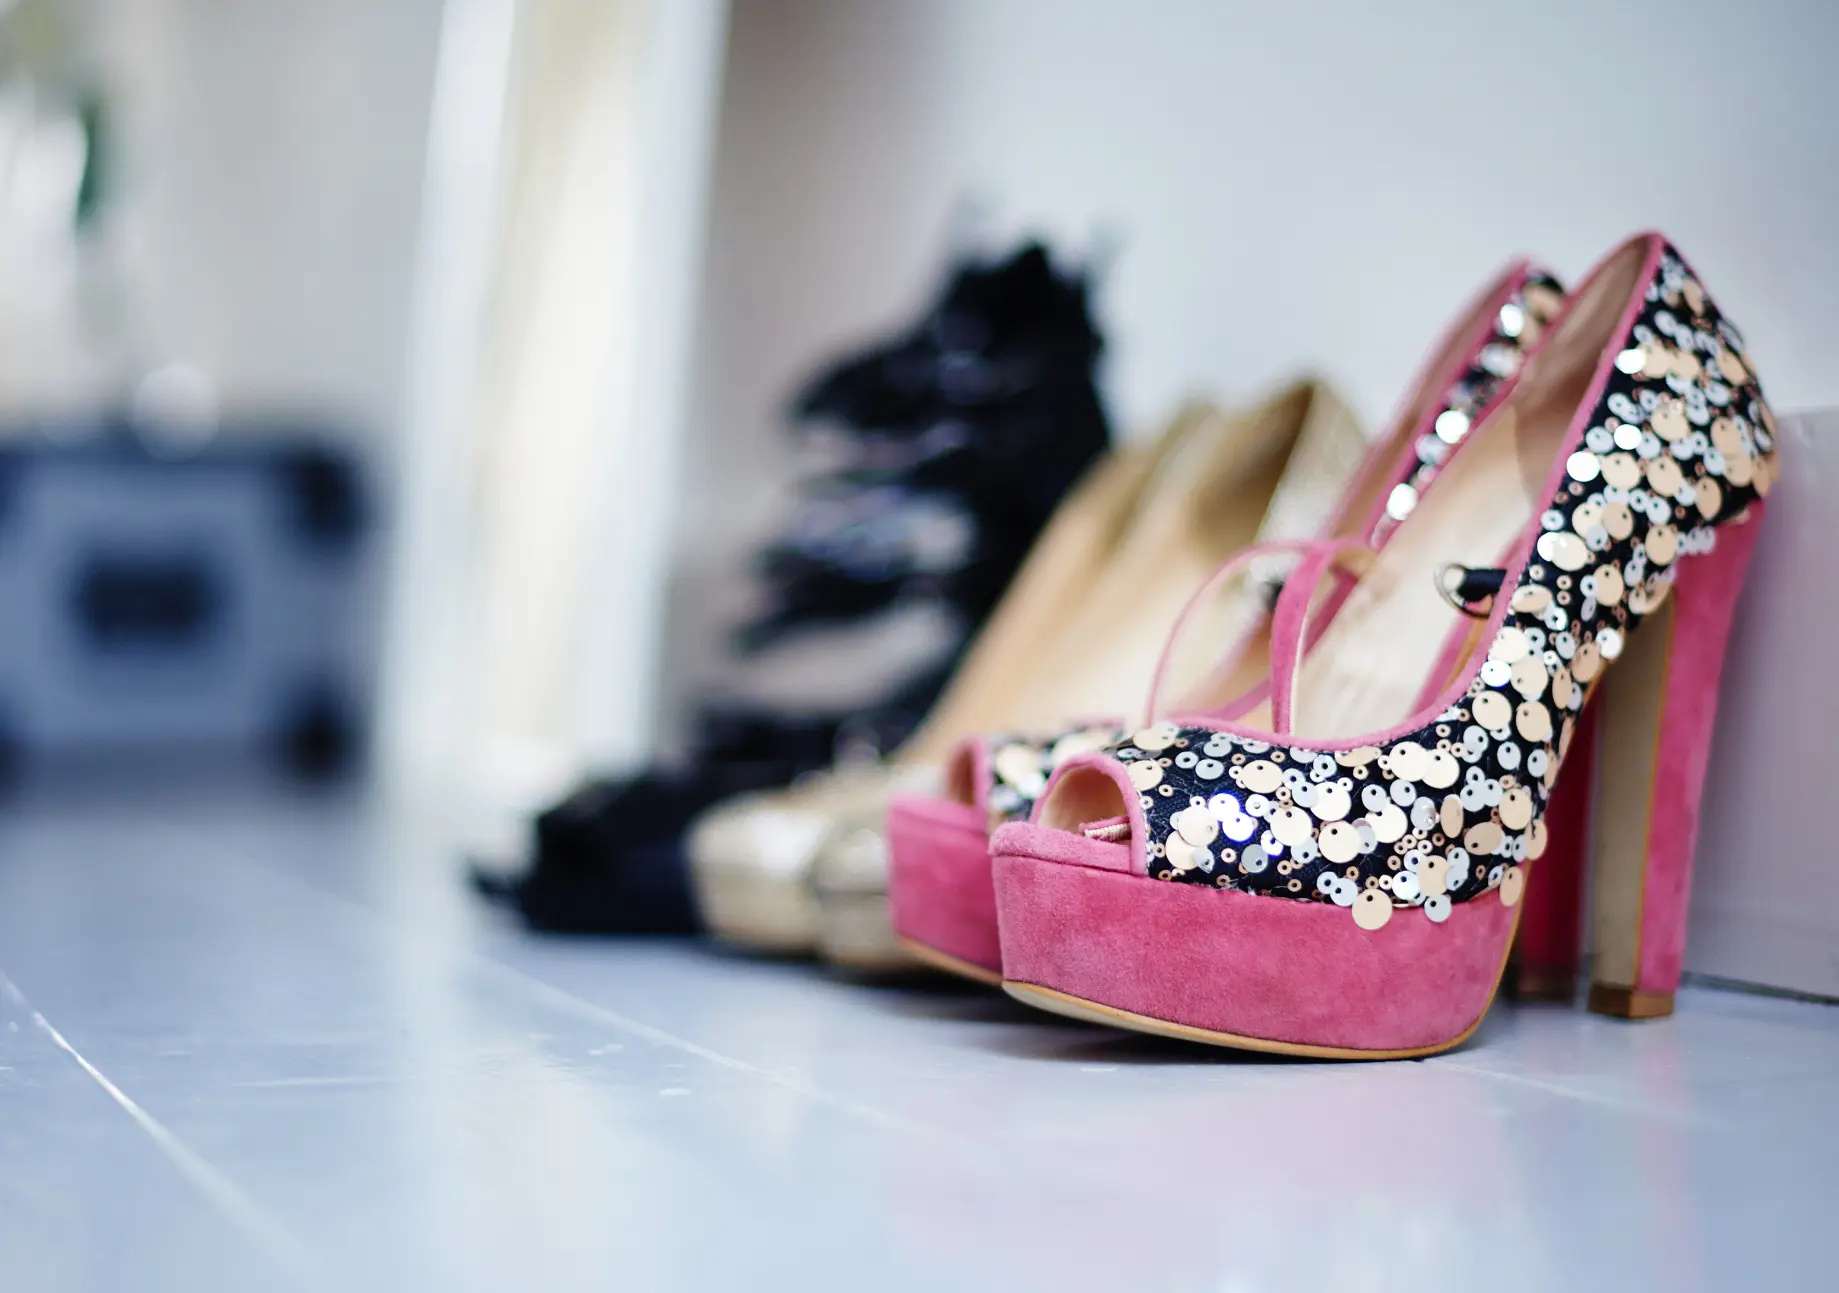 Punya high heels kebesaran? Atasi dengan cara sederhana. (Image: sheknows.com)